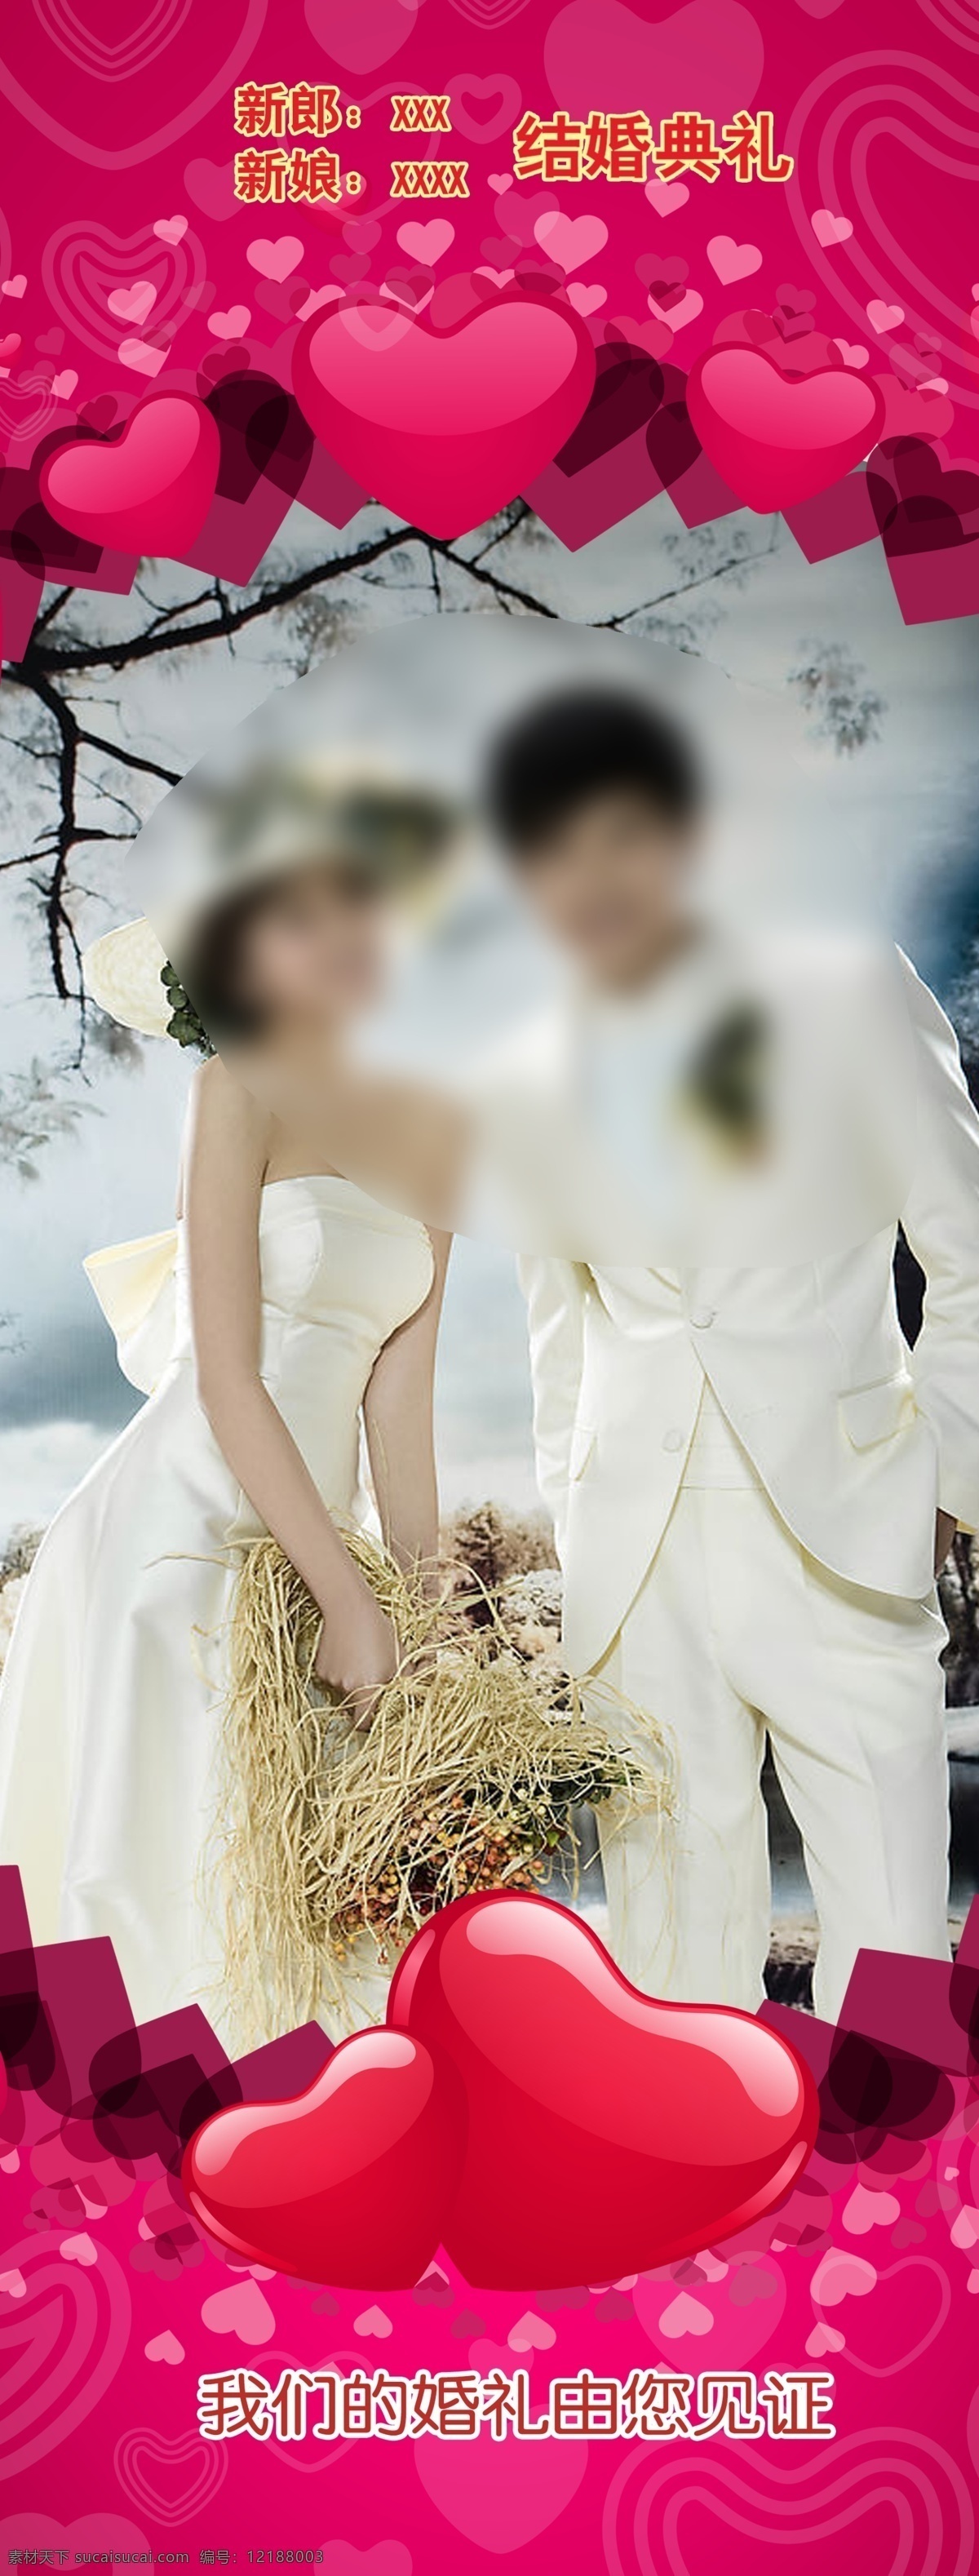 婚礼x展架 红心 婚纱摄影模板 心型 结婚 摄影模板 展板模板 广告设计模板 源文件